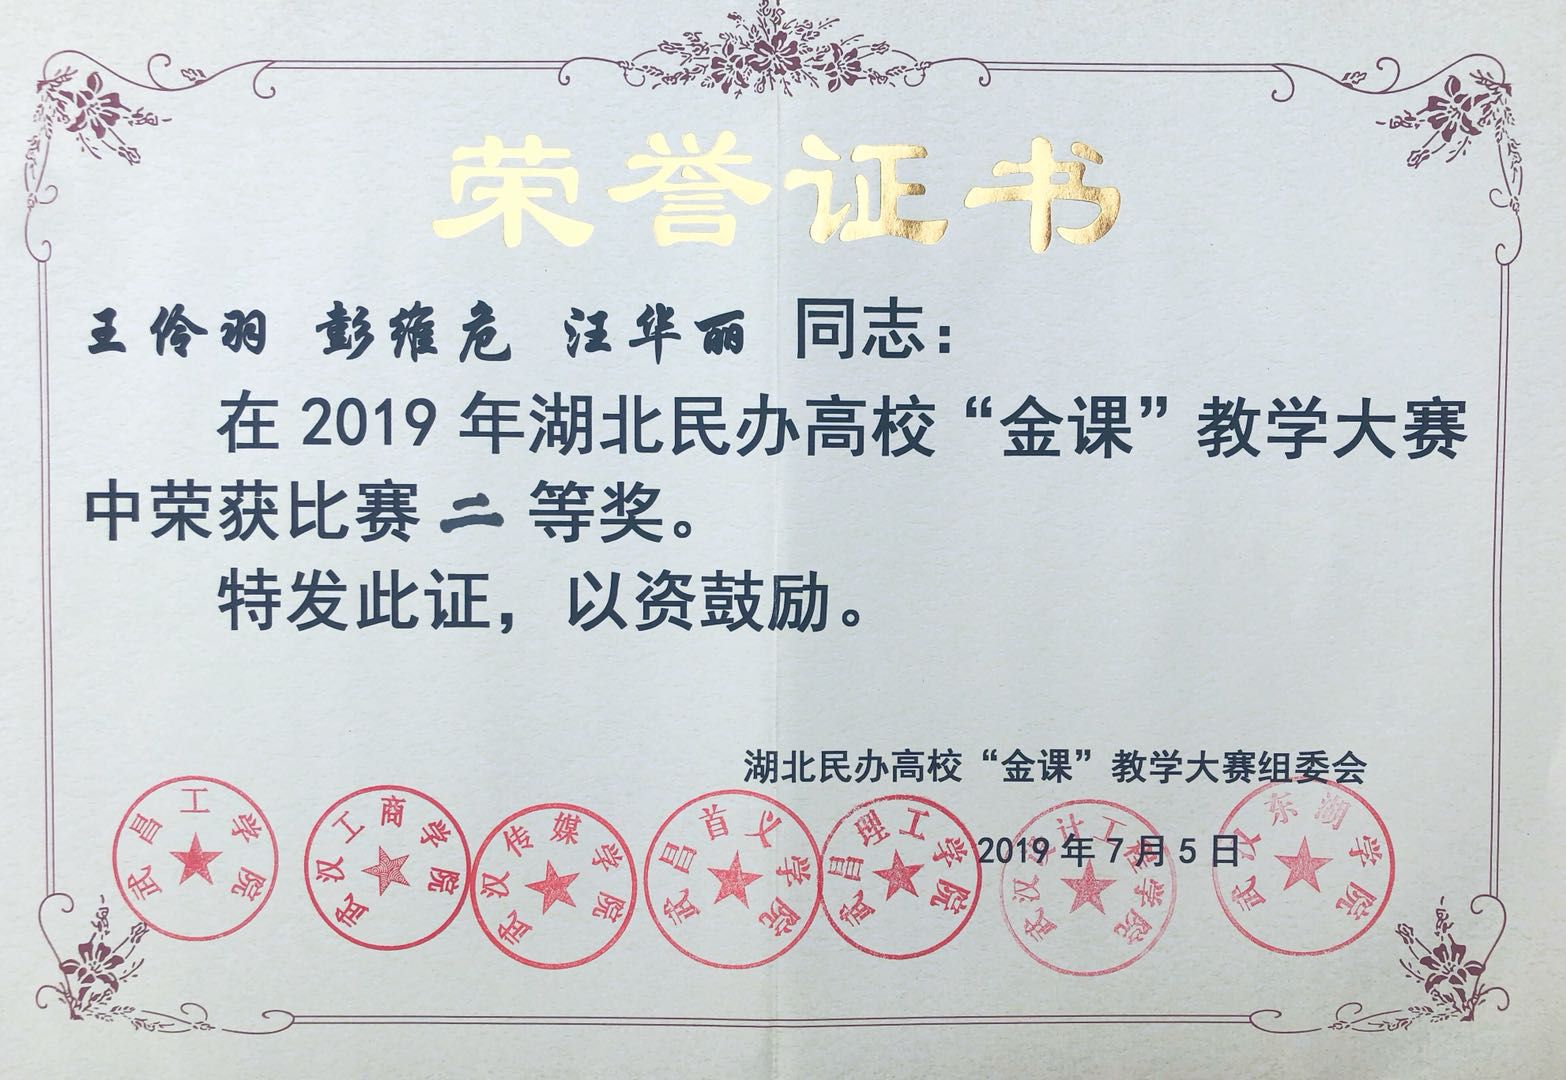 喜报!我校教师王伶羽荣获全国高校教师教学技能大赛二等奖